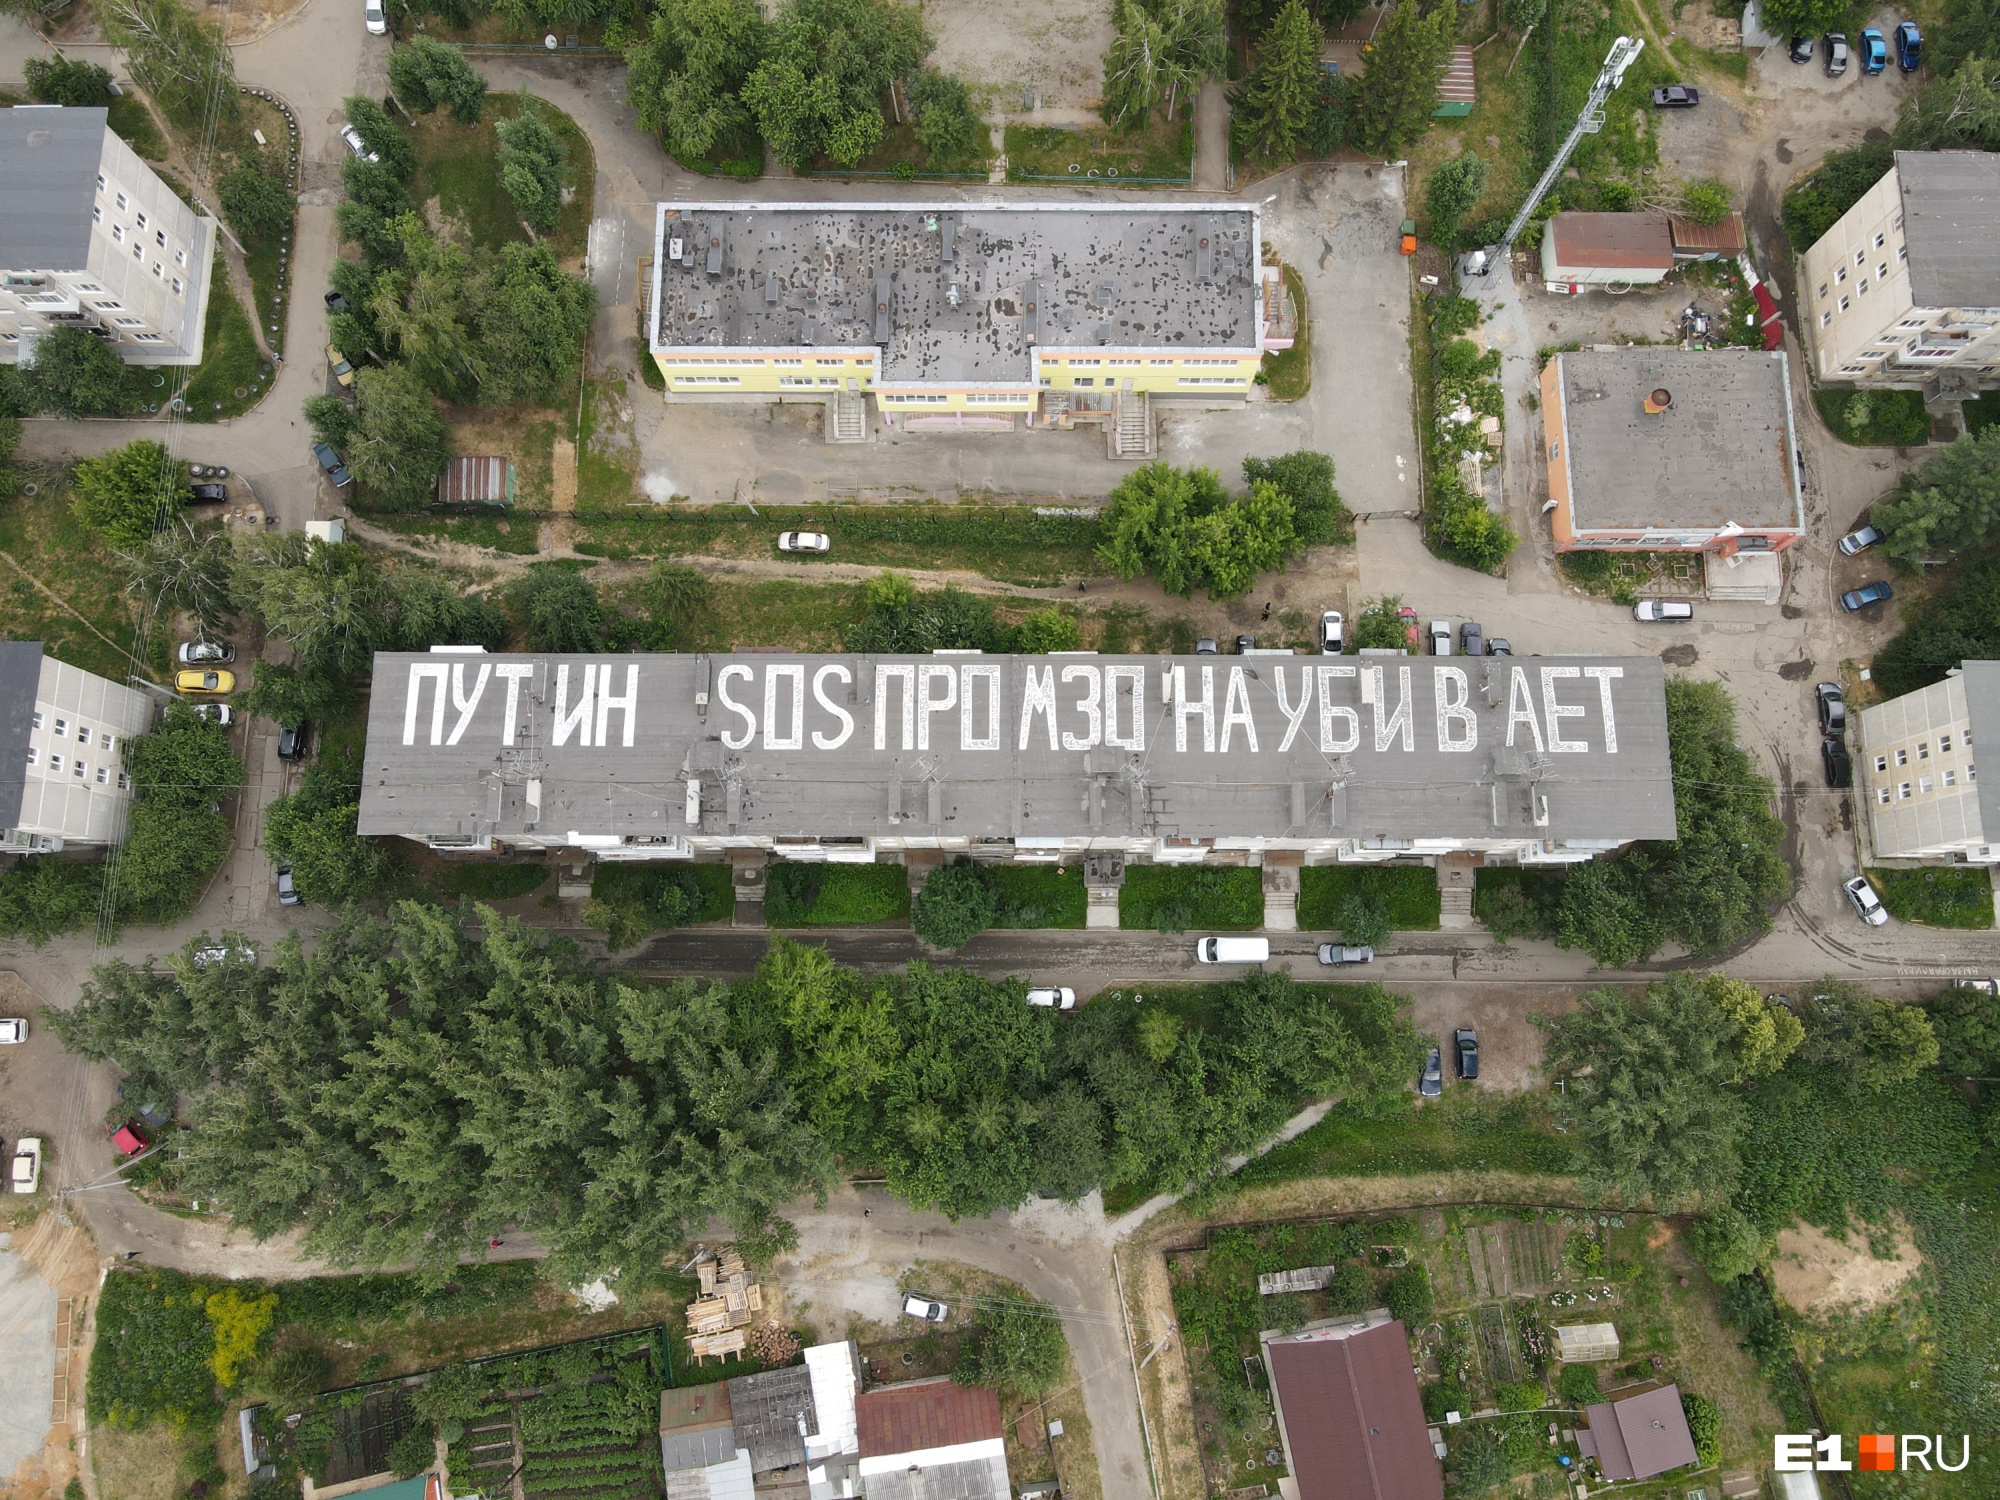 В Екатеринбурге во всю крышу дома появилась огромная надпись «Промзона убивает». Показываем ее сверху